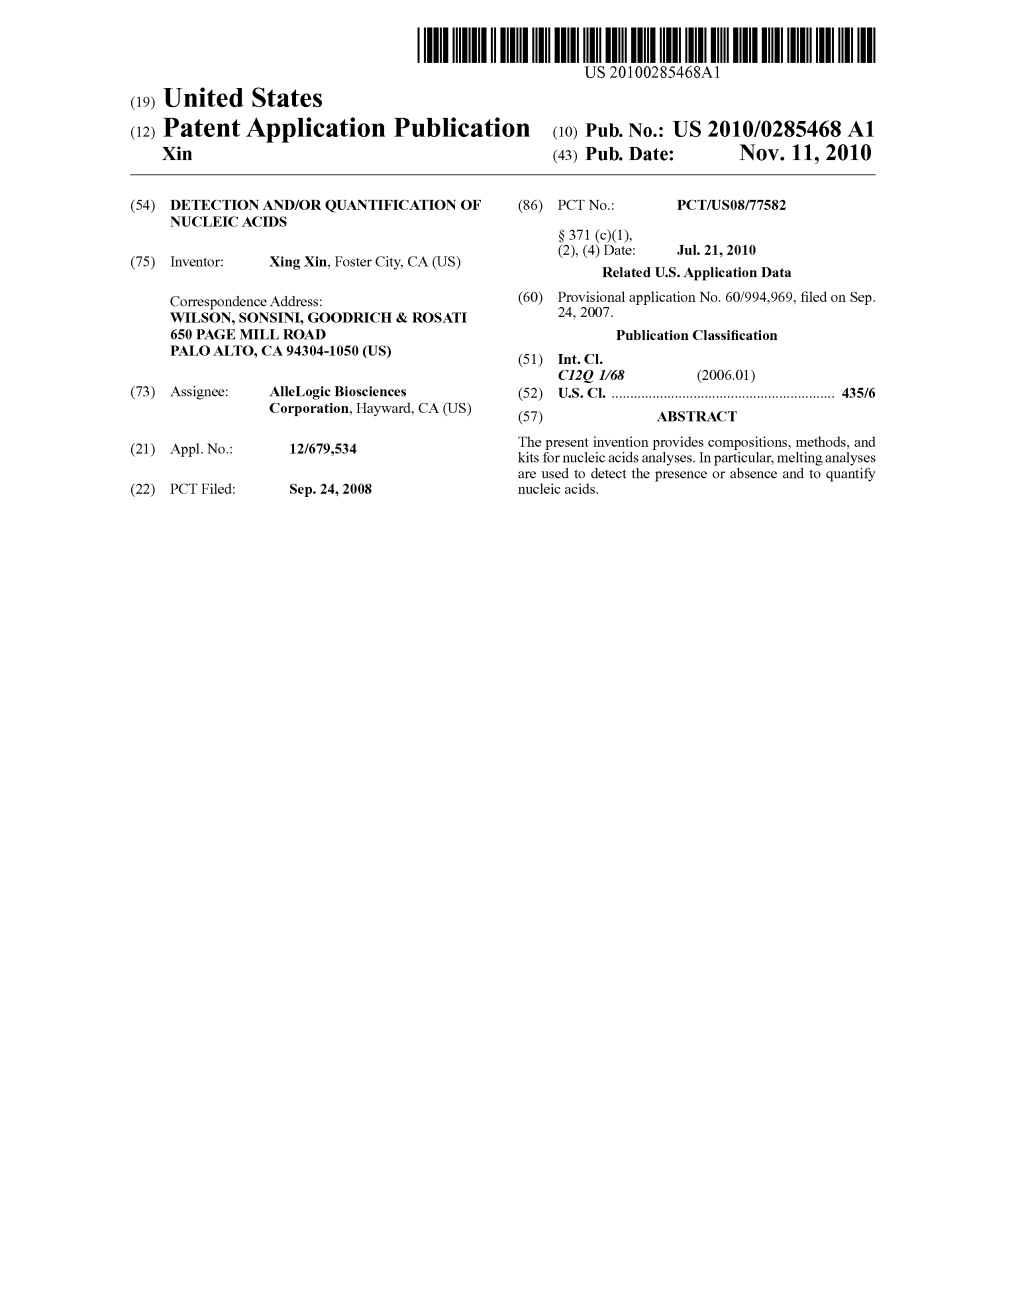 (12) Patent Application Publication (10) Pub. No.: US 2010/0285468 A1 Xin (43) Pub